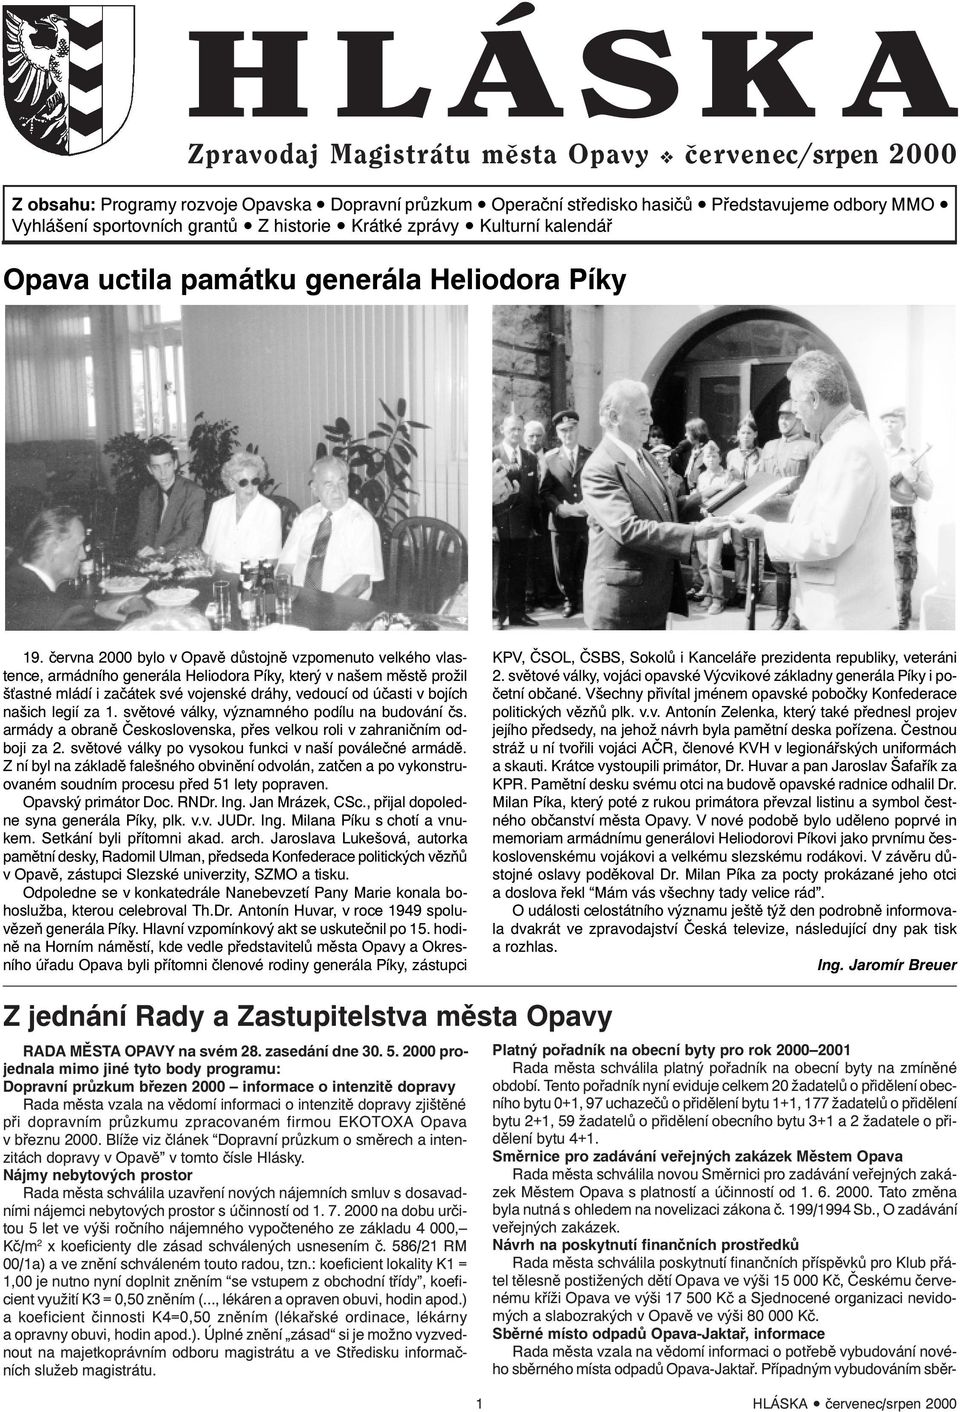 června 2000 bylo v Opavě důstojně vzpomenuto velkého vlastence, armádního generála Heliodora Píky, který v našem městě prožil š astné mládí i začátek své vojenské dráhy, vedoucí od účasti v bojích